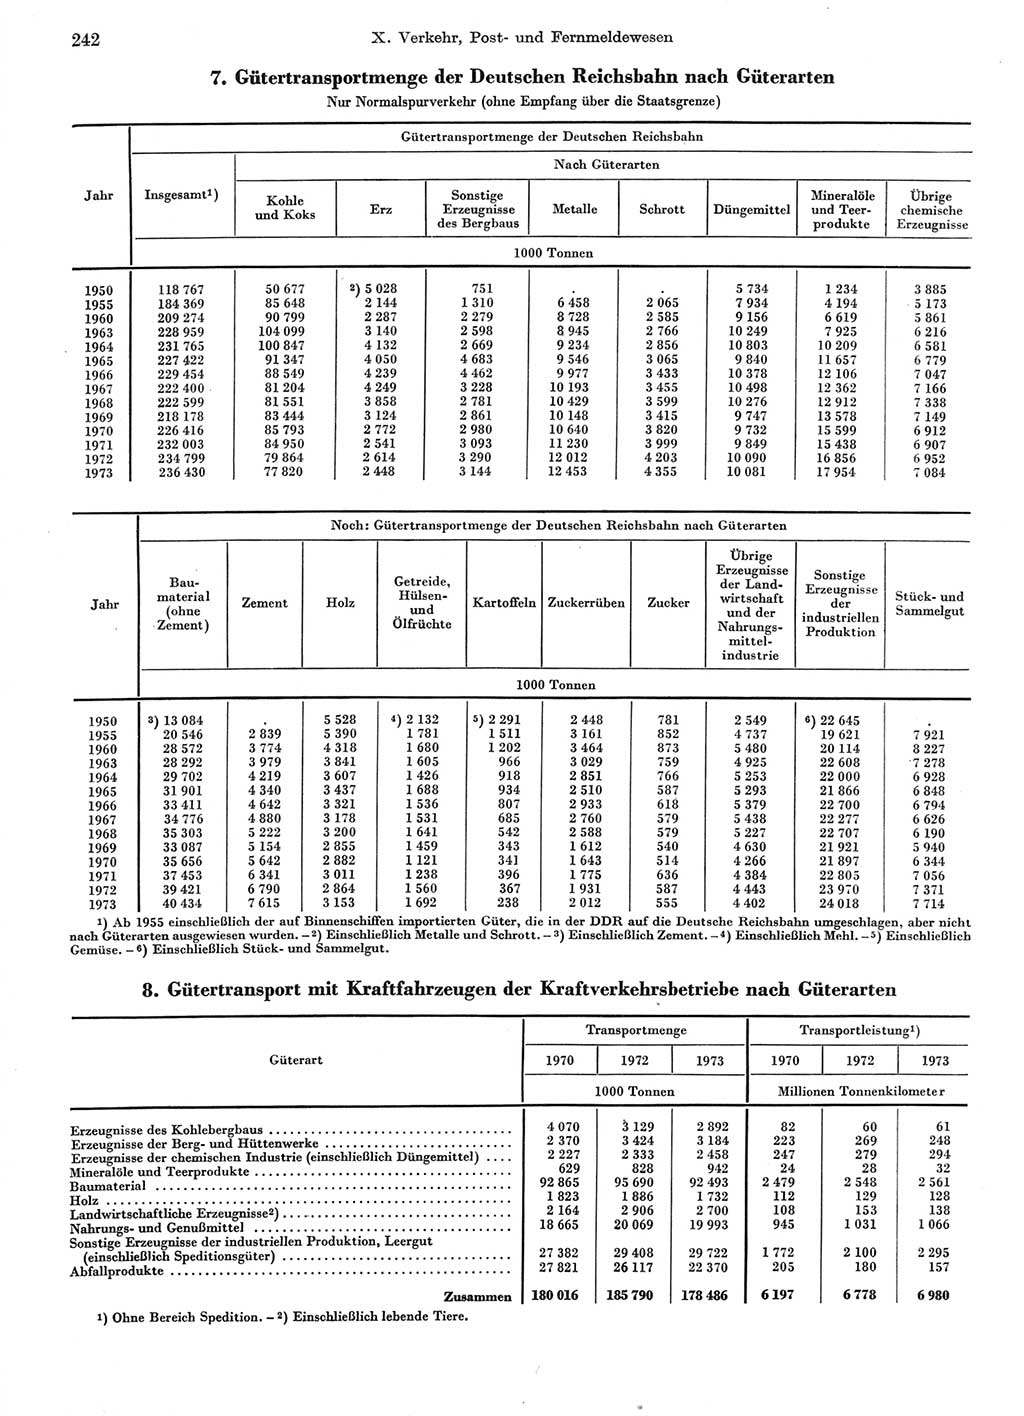 Statistisches Jahrbuch der Deutschen Demokratischen Republik (DDR) 1974, Seite 242 (Stat. Jb. DDR 1974, S. 242)